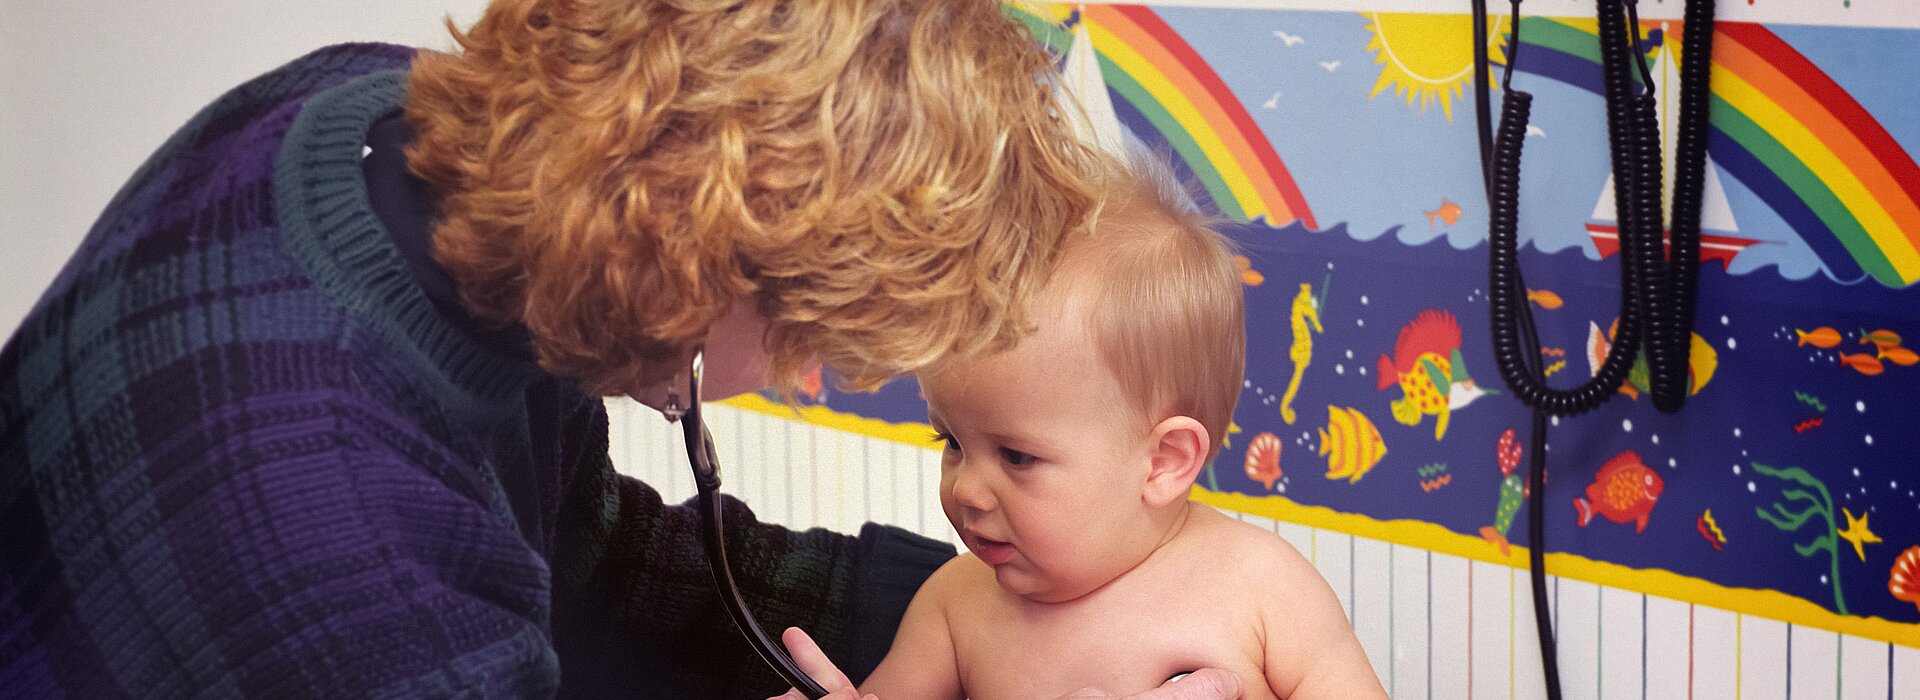 Serviço de pediatria do H. Evangélico Mackenzie lança campanha